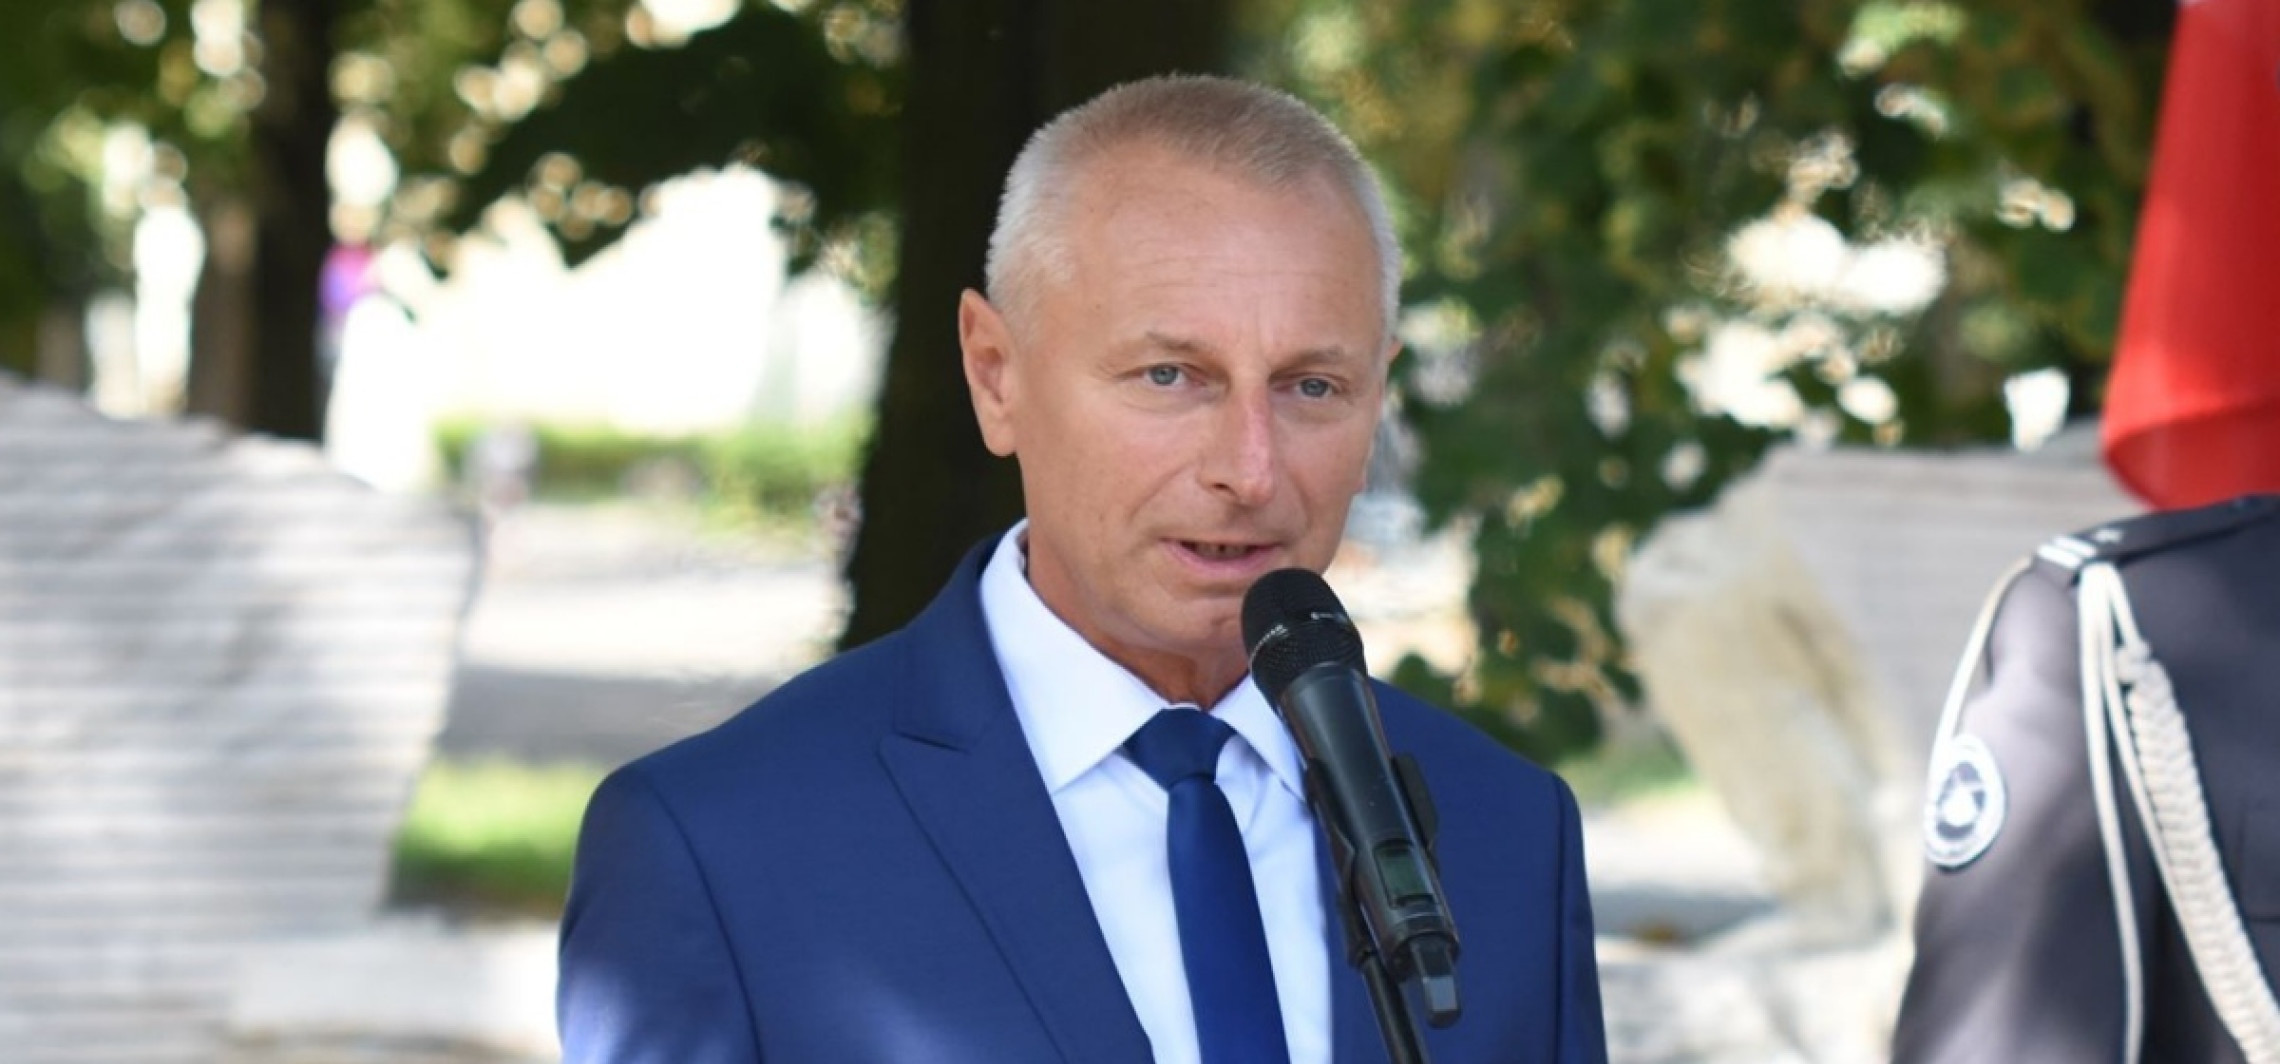 Inowrocław - Prawie dwukrotna podwyżka pensji prezydenta